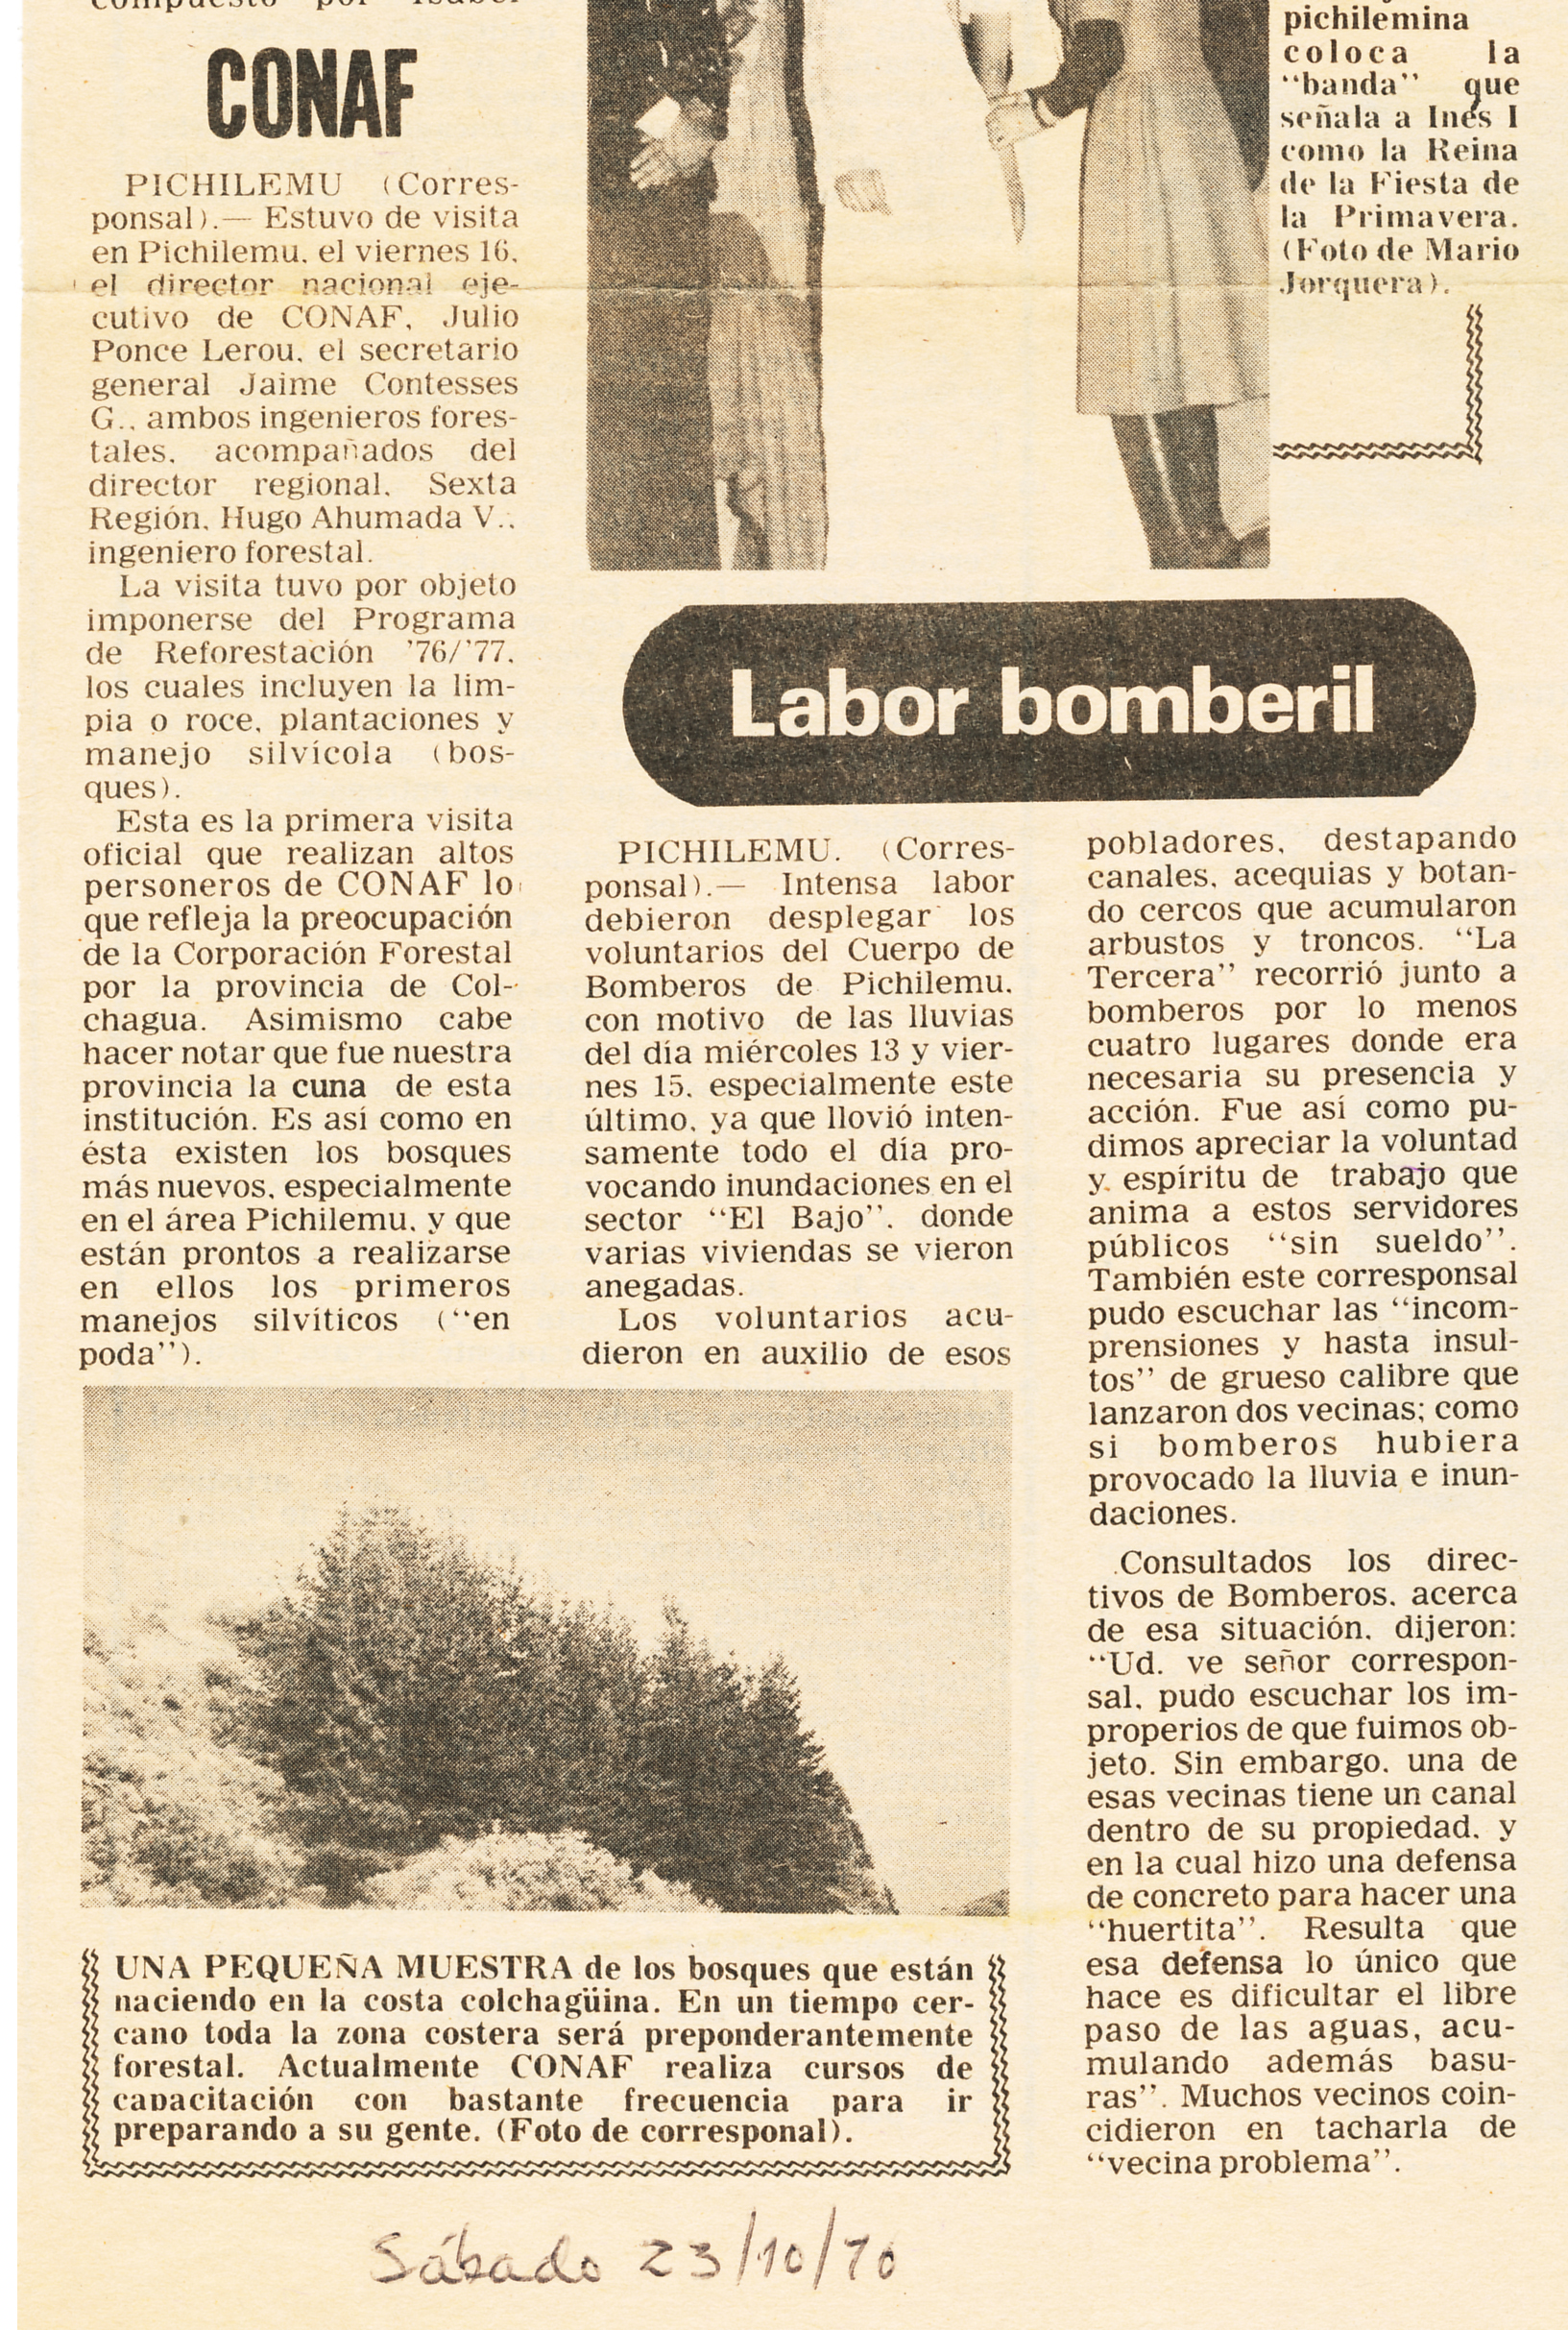 CONAF y Labor Bomberil